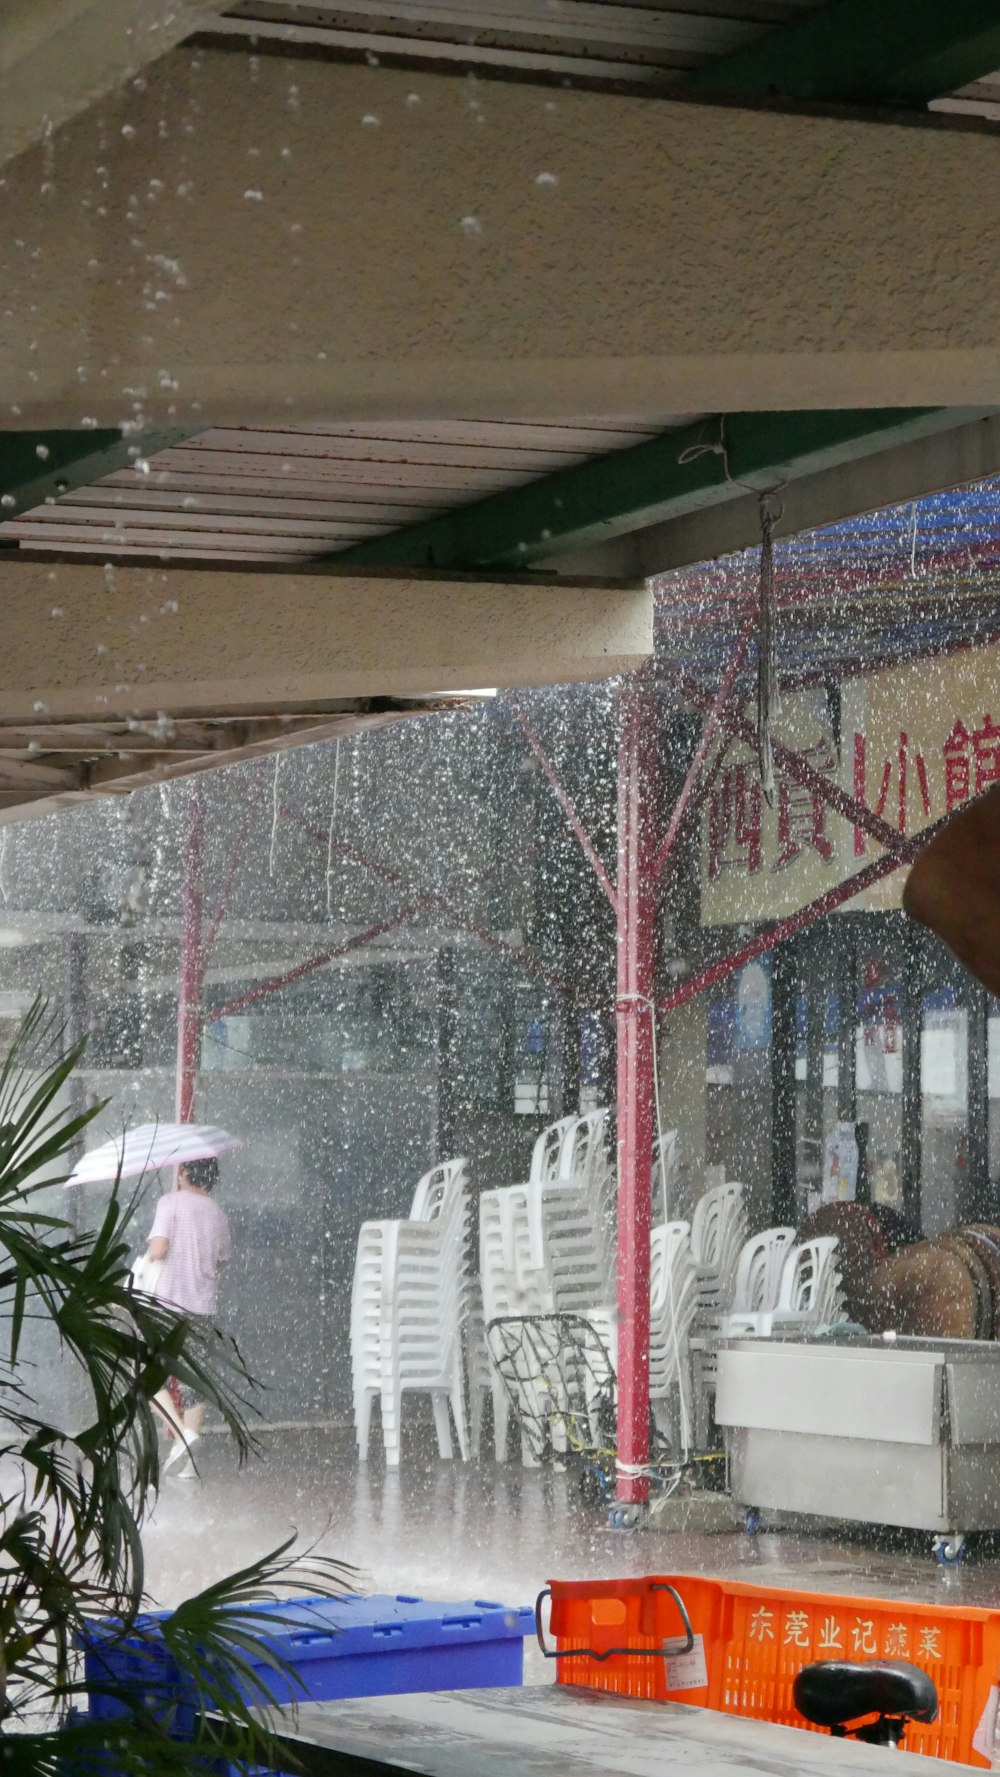 eine Frau mit Regenschirm steht im Regen